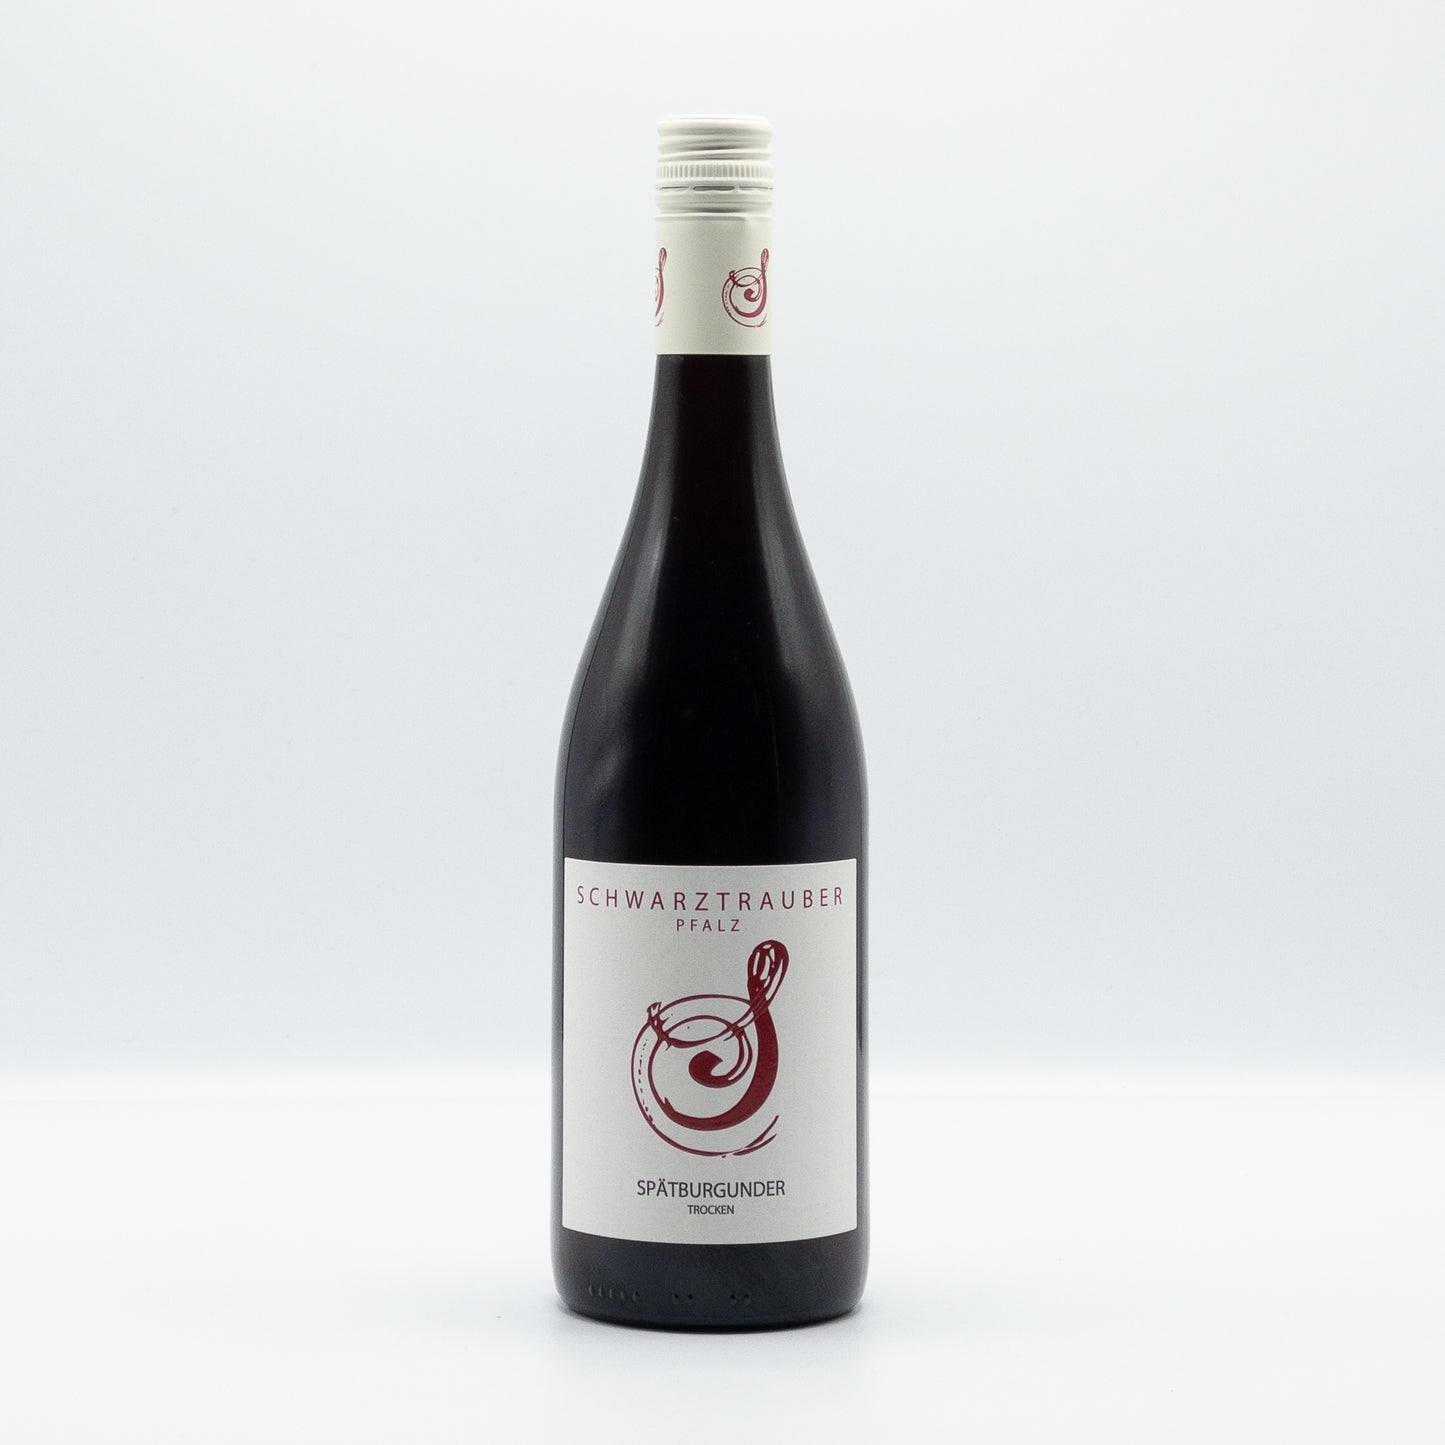 Spatburgunder (Pinot Noir), Schwarztrauber